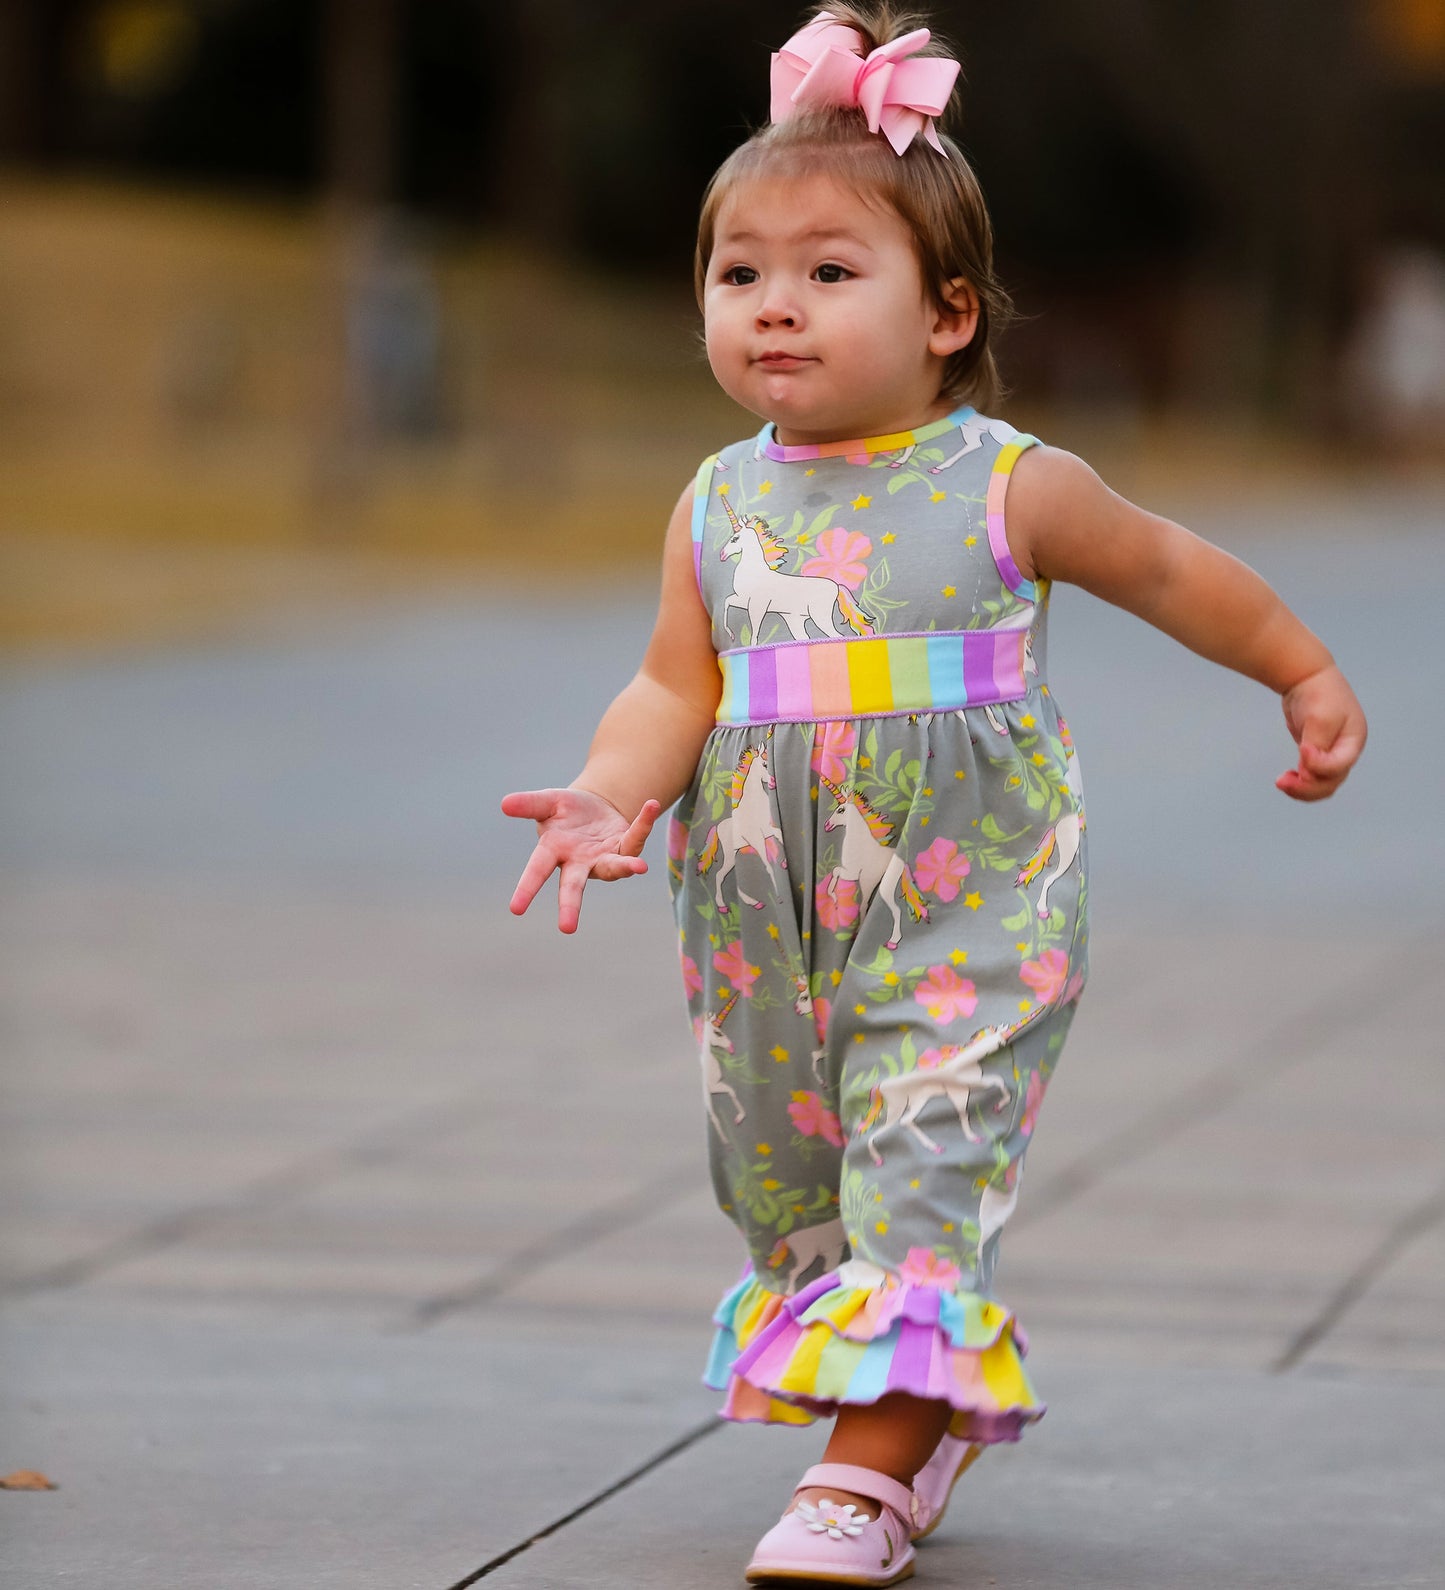 AnnLoren Boutique Baby Girls' Romper Unicorn & Rainbow Onesie Toddler Jumpsuit